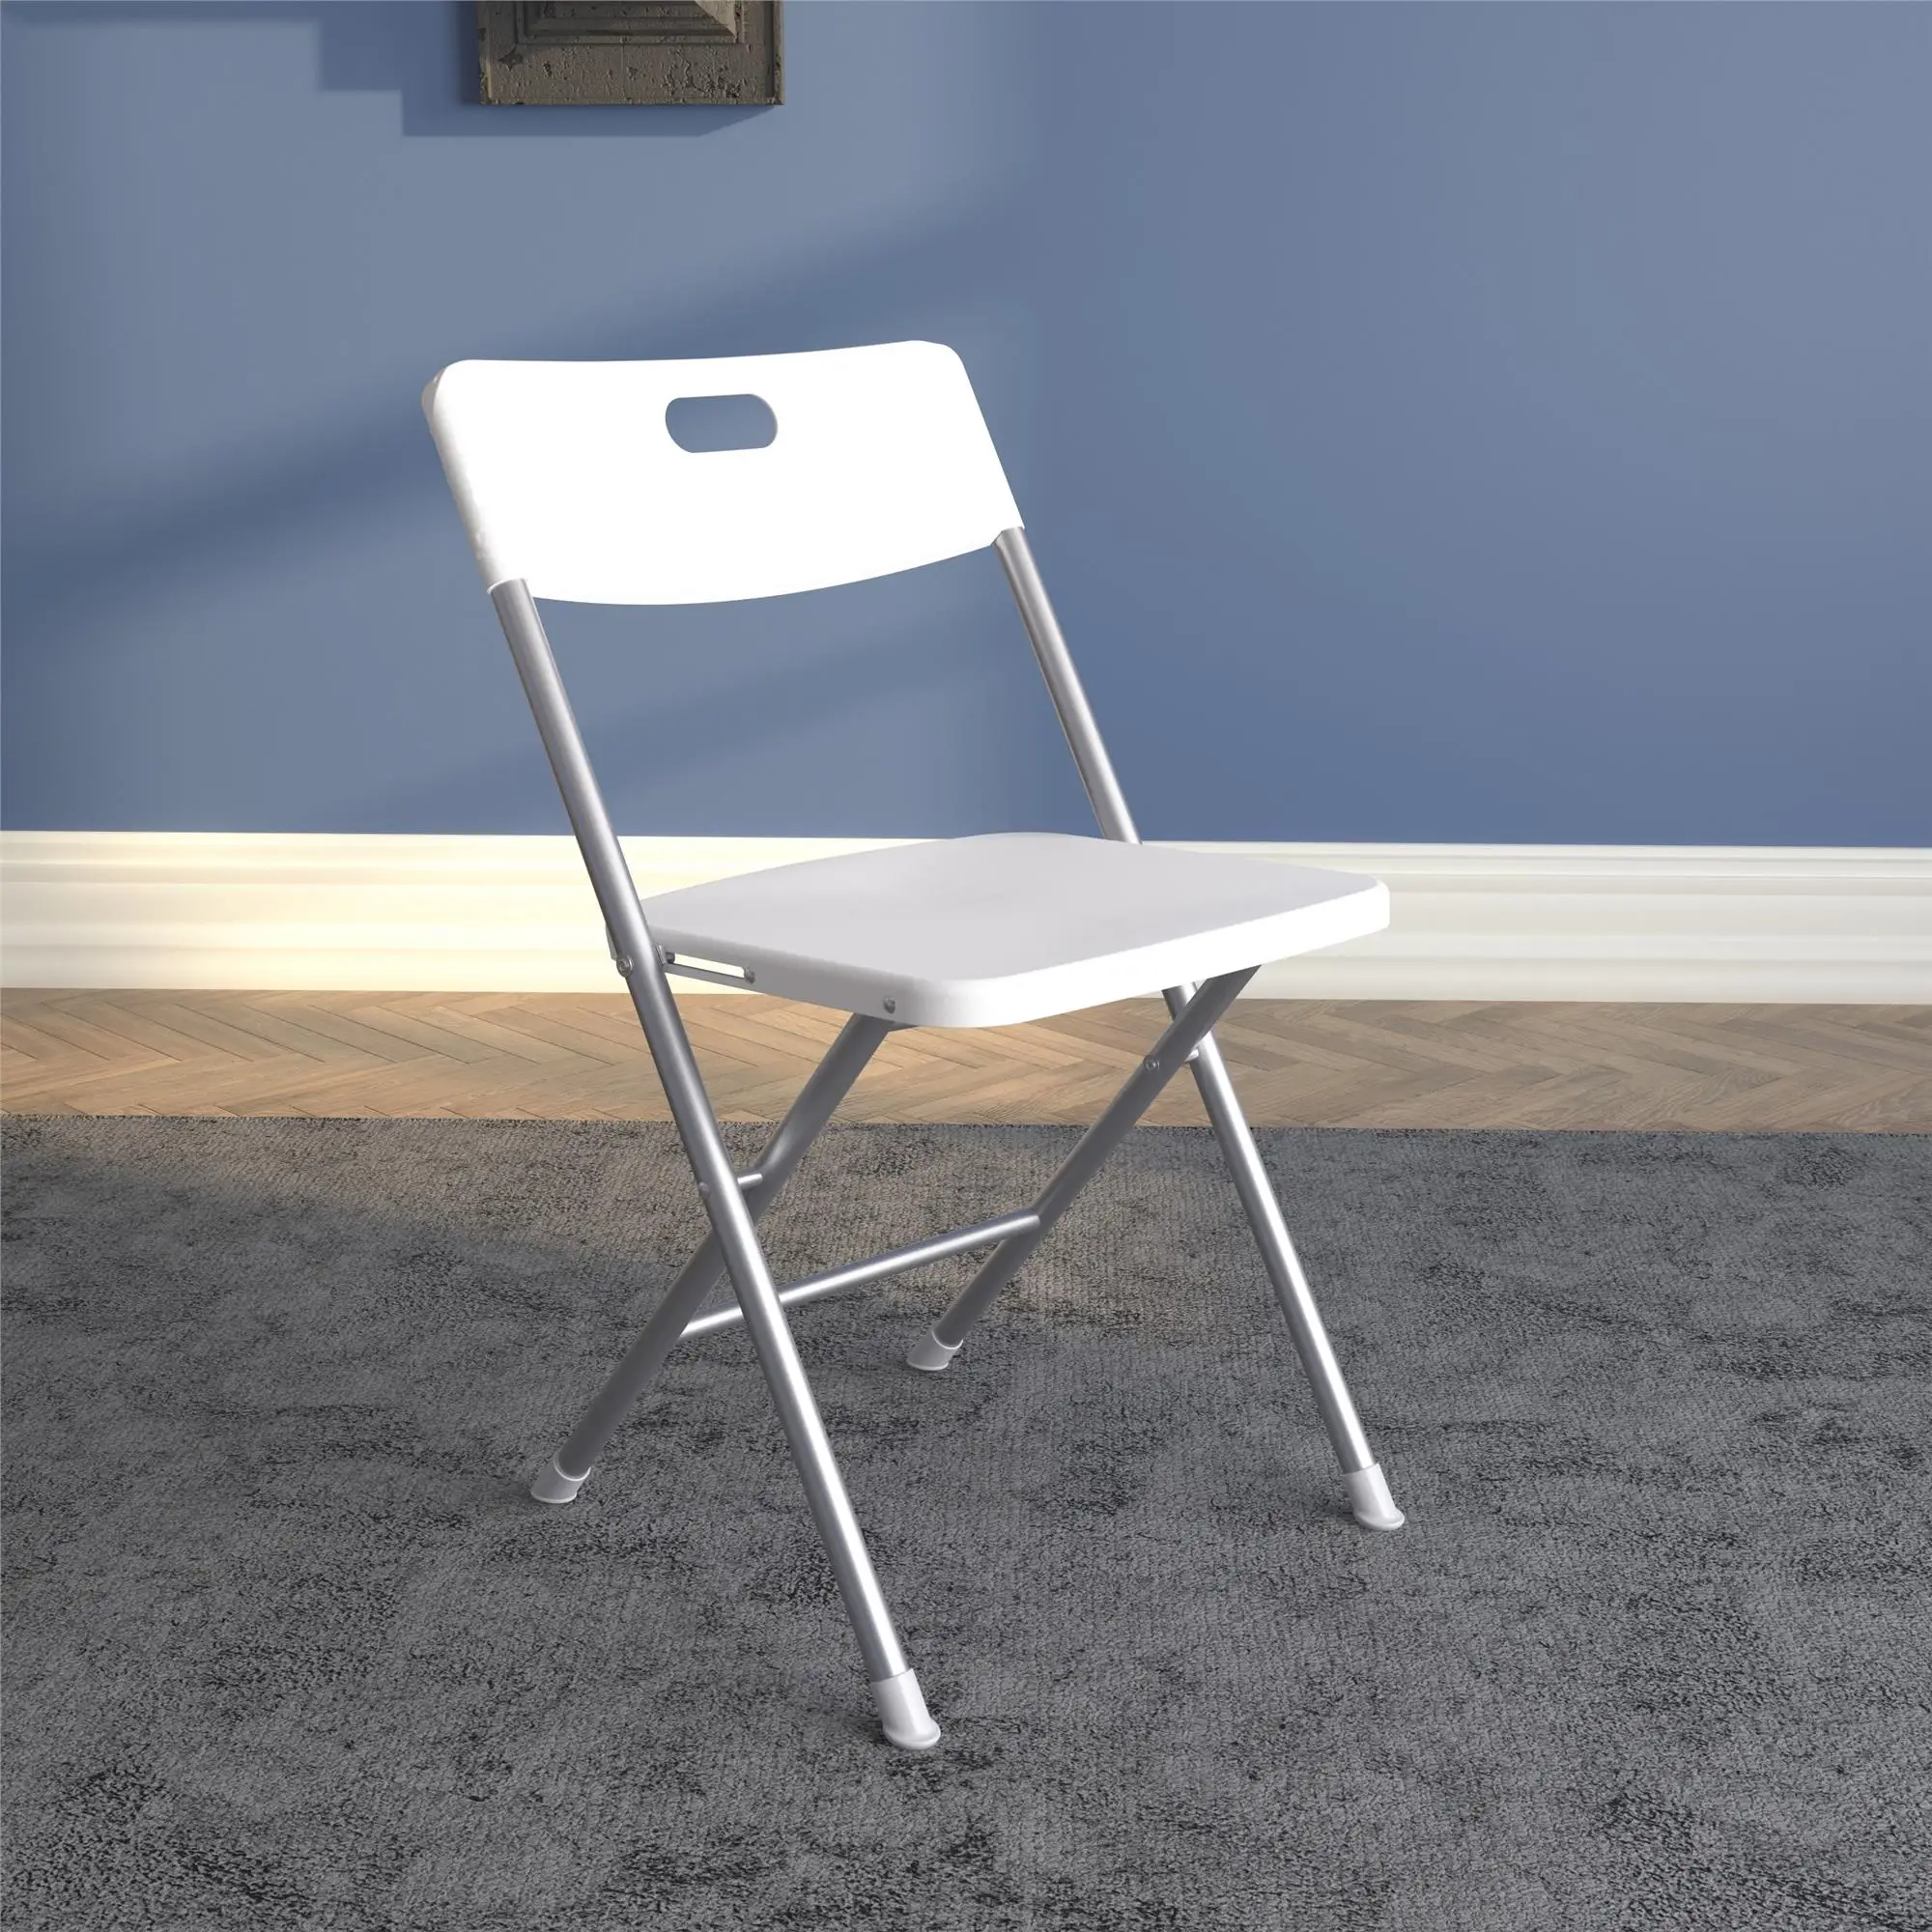 

Складное кресло сиденье и спинка, белое, 4 шт. в упаковке